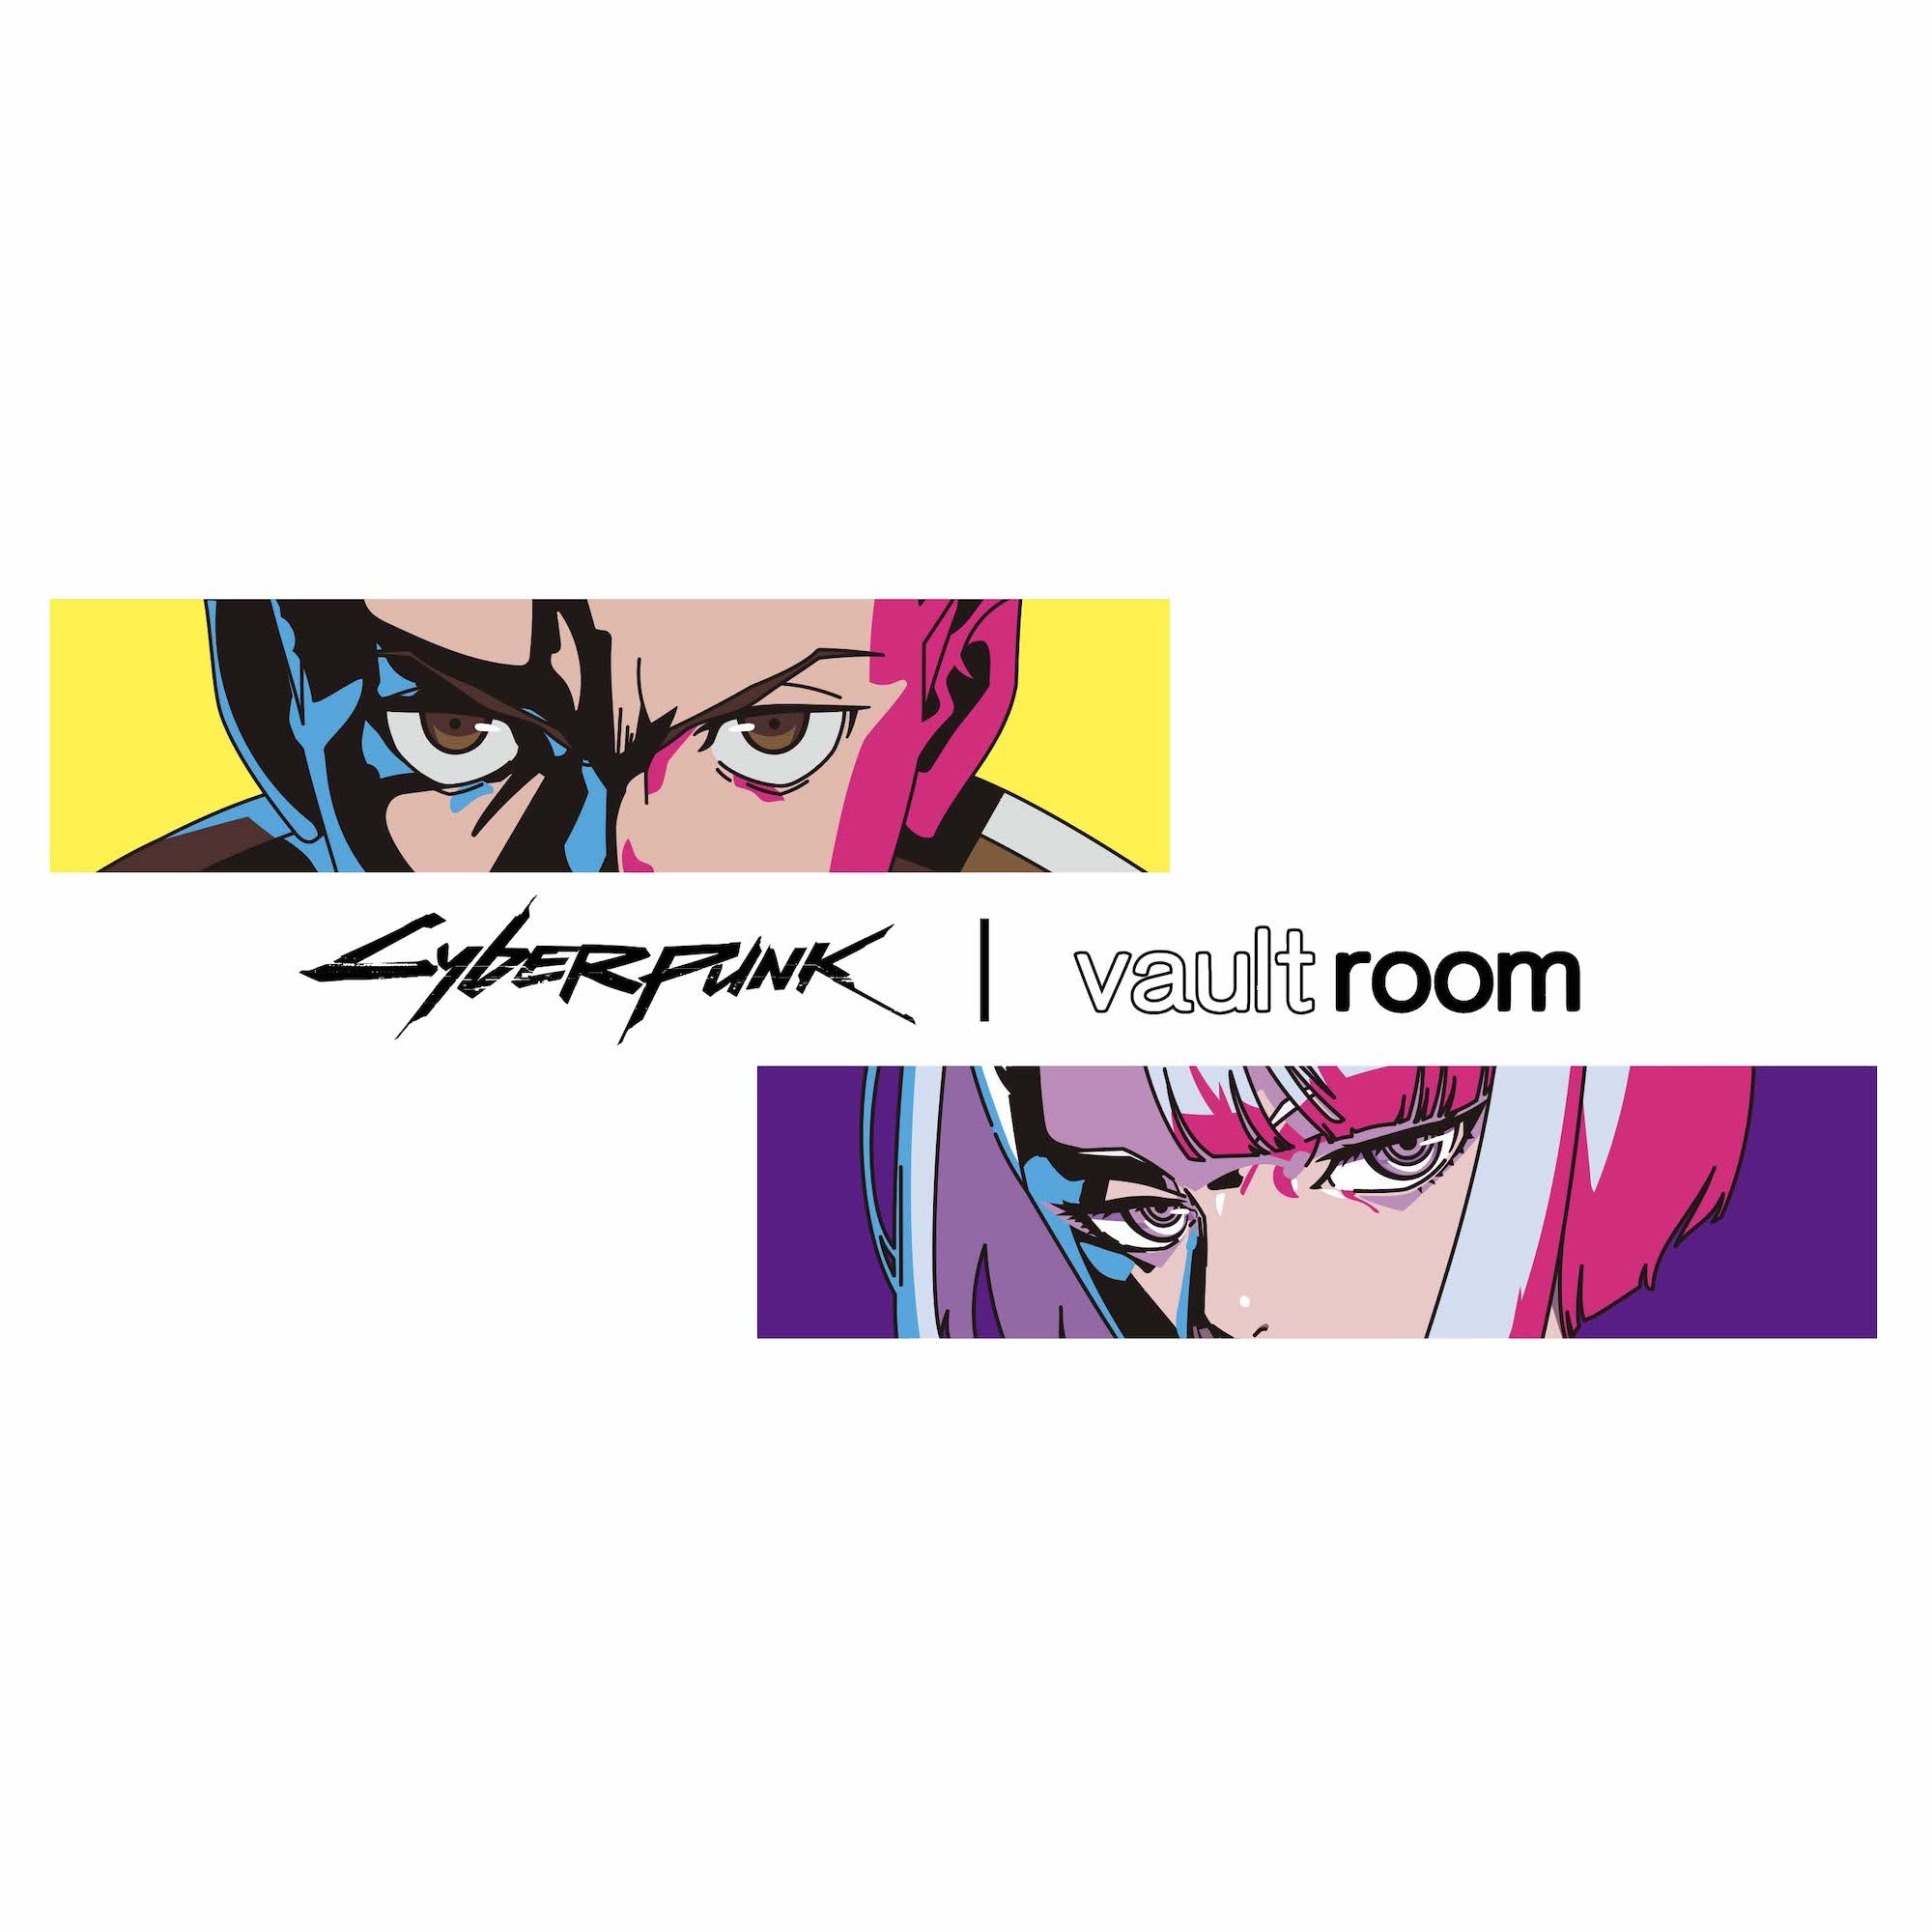 vaultroom × CYBERPUNK – VAULTROOM